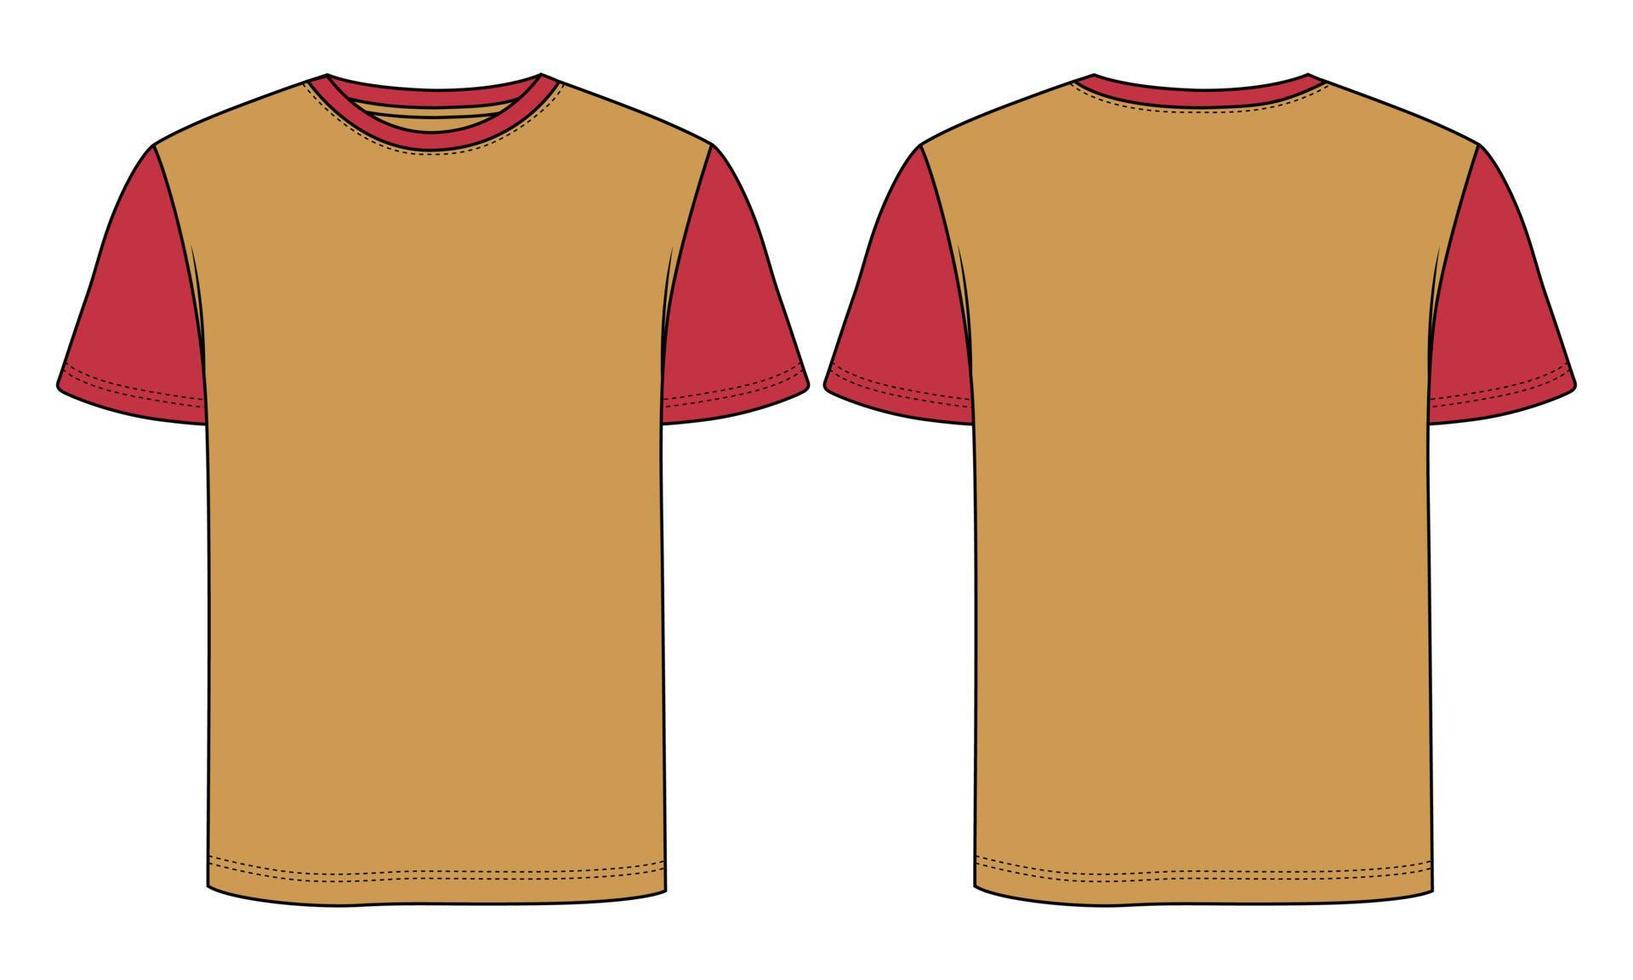 tweekleurige gele, rode kleur regular fit korte mouw basic t-shirt technische mode platte schets vector illustratie sjabloon voorkant, achterkant bekeken. kleding ontwerp mock-up tekening illustratie.